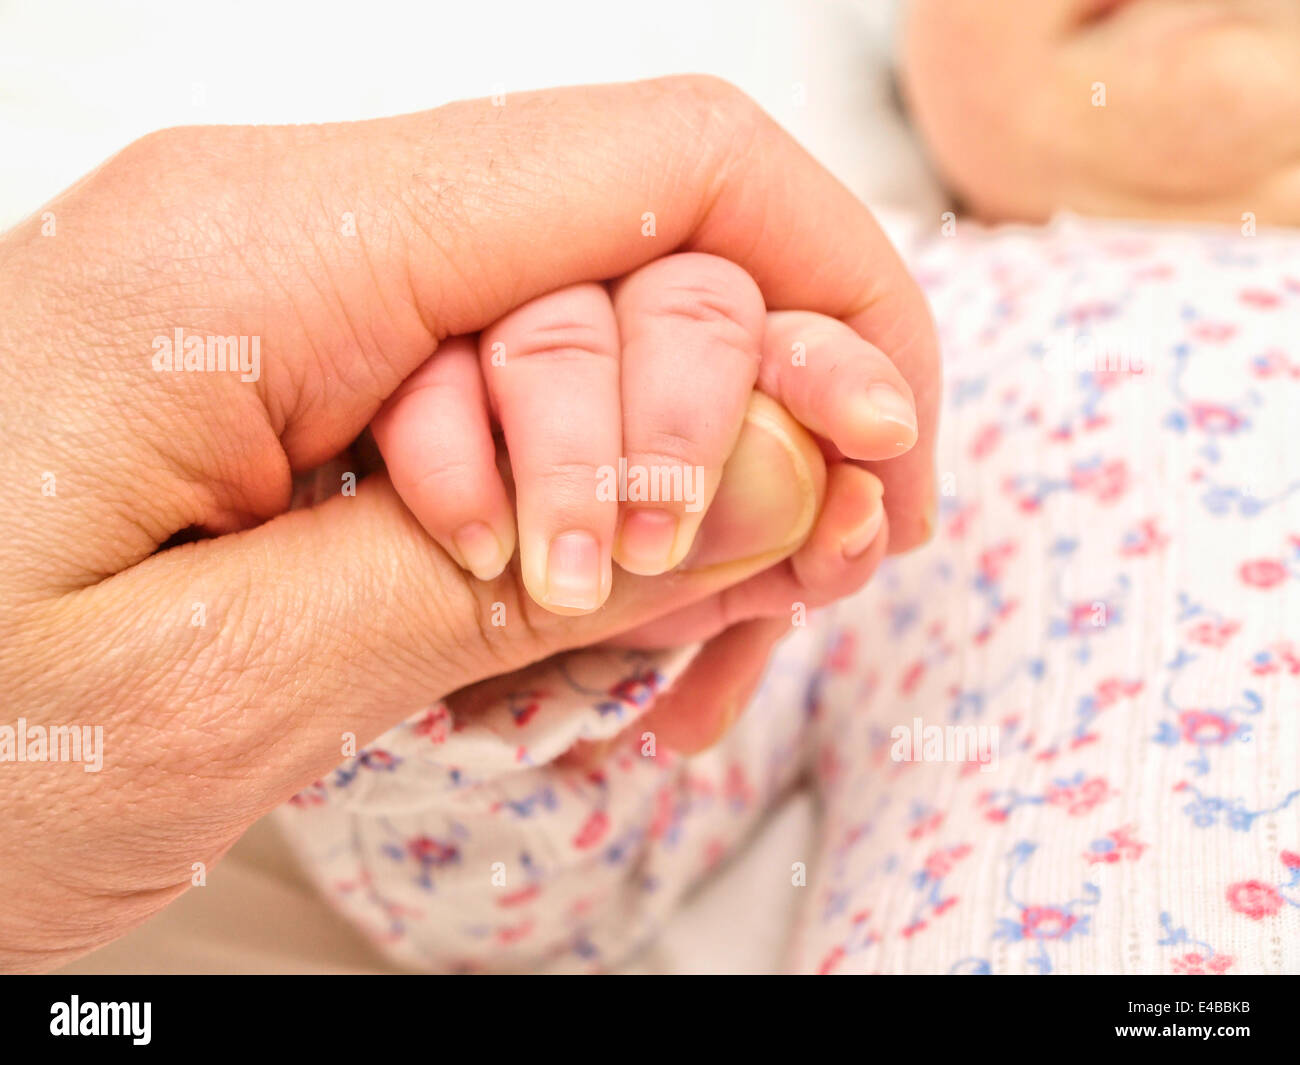 La celebración de una mano bebés de padres Foto de stock